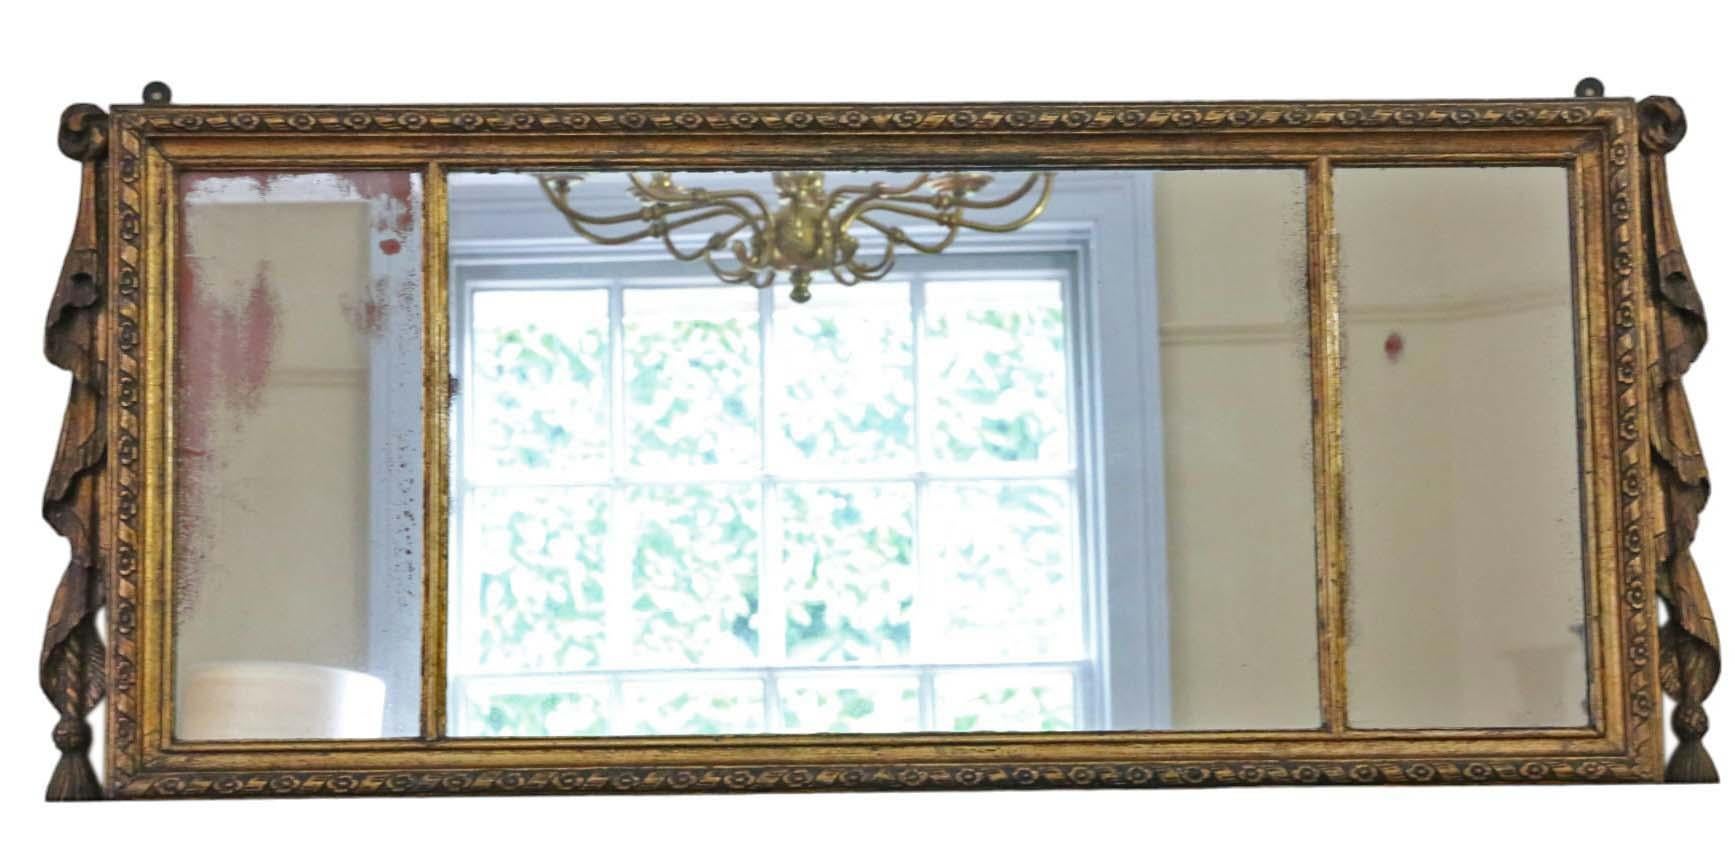 Grand miroir mural doré ancien du XIXe siècle, doté d'un motif de guirlandes décoratives de grande qualité.

Ce miroir séduit par son design simple mais saisissant, donnant du caractère à tout espace approprié. Le cadre est solide, sans joints